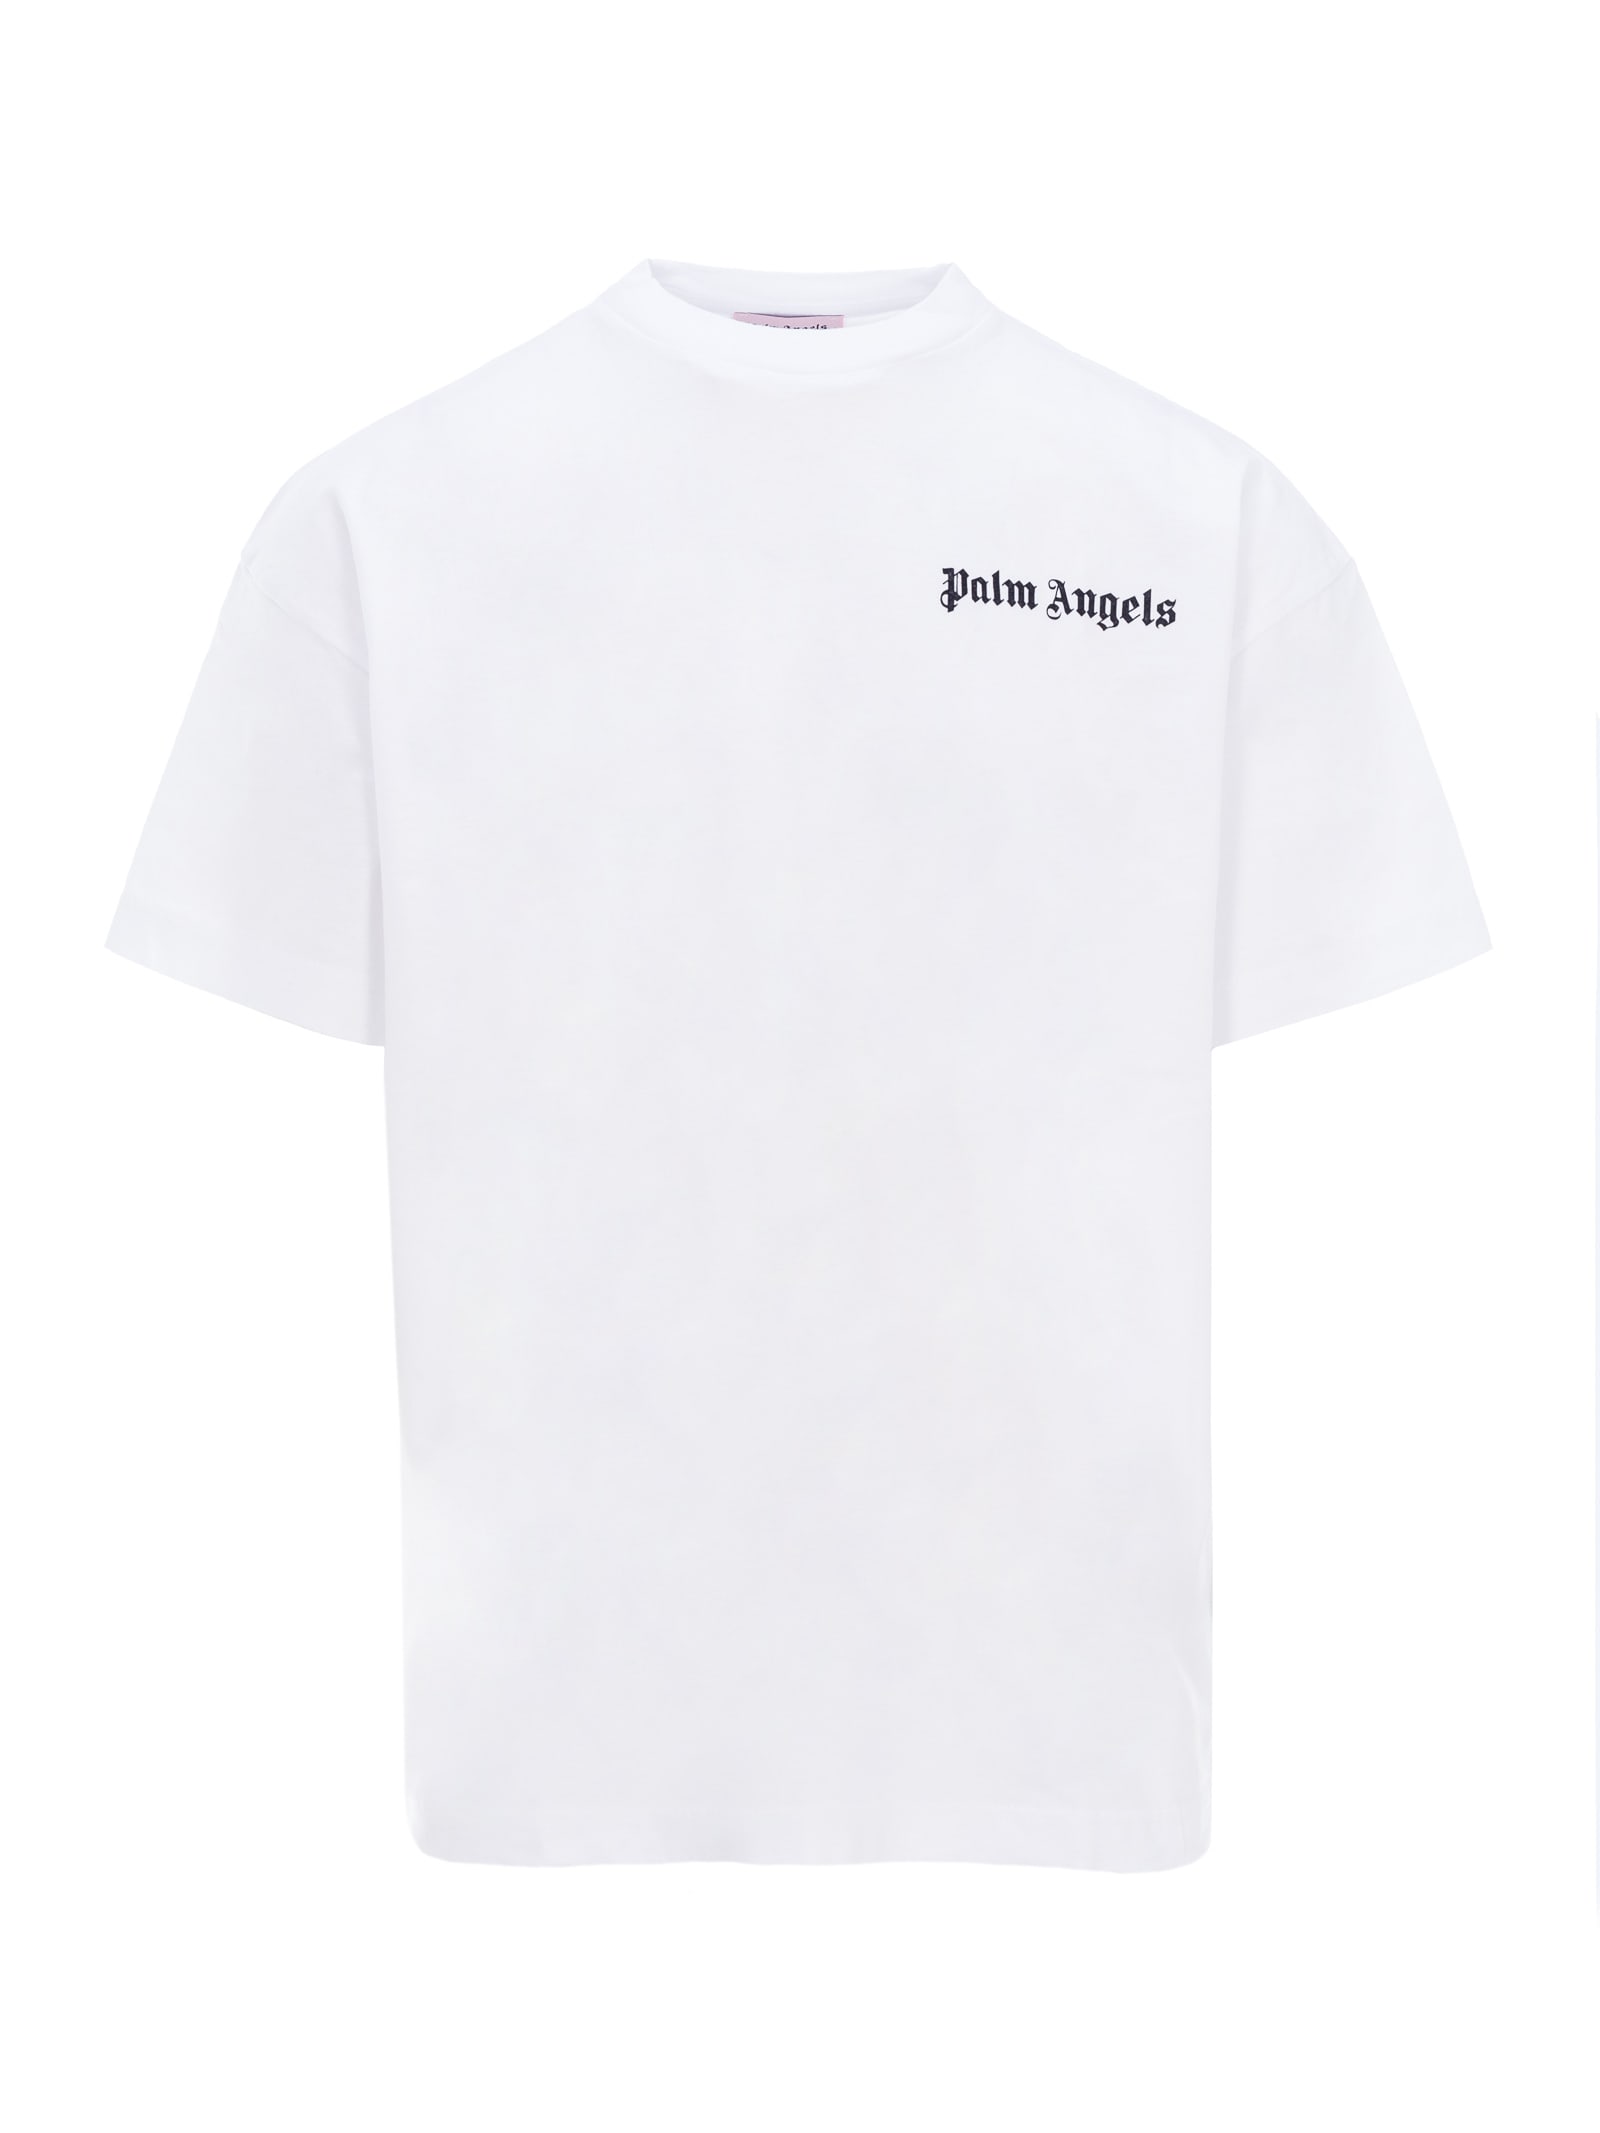 Palm Angels New Basic Logo T-shirt In White Black | ModeSens